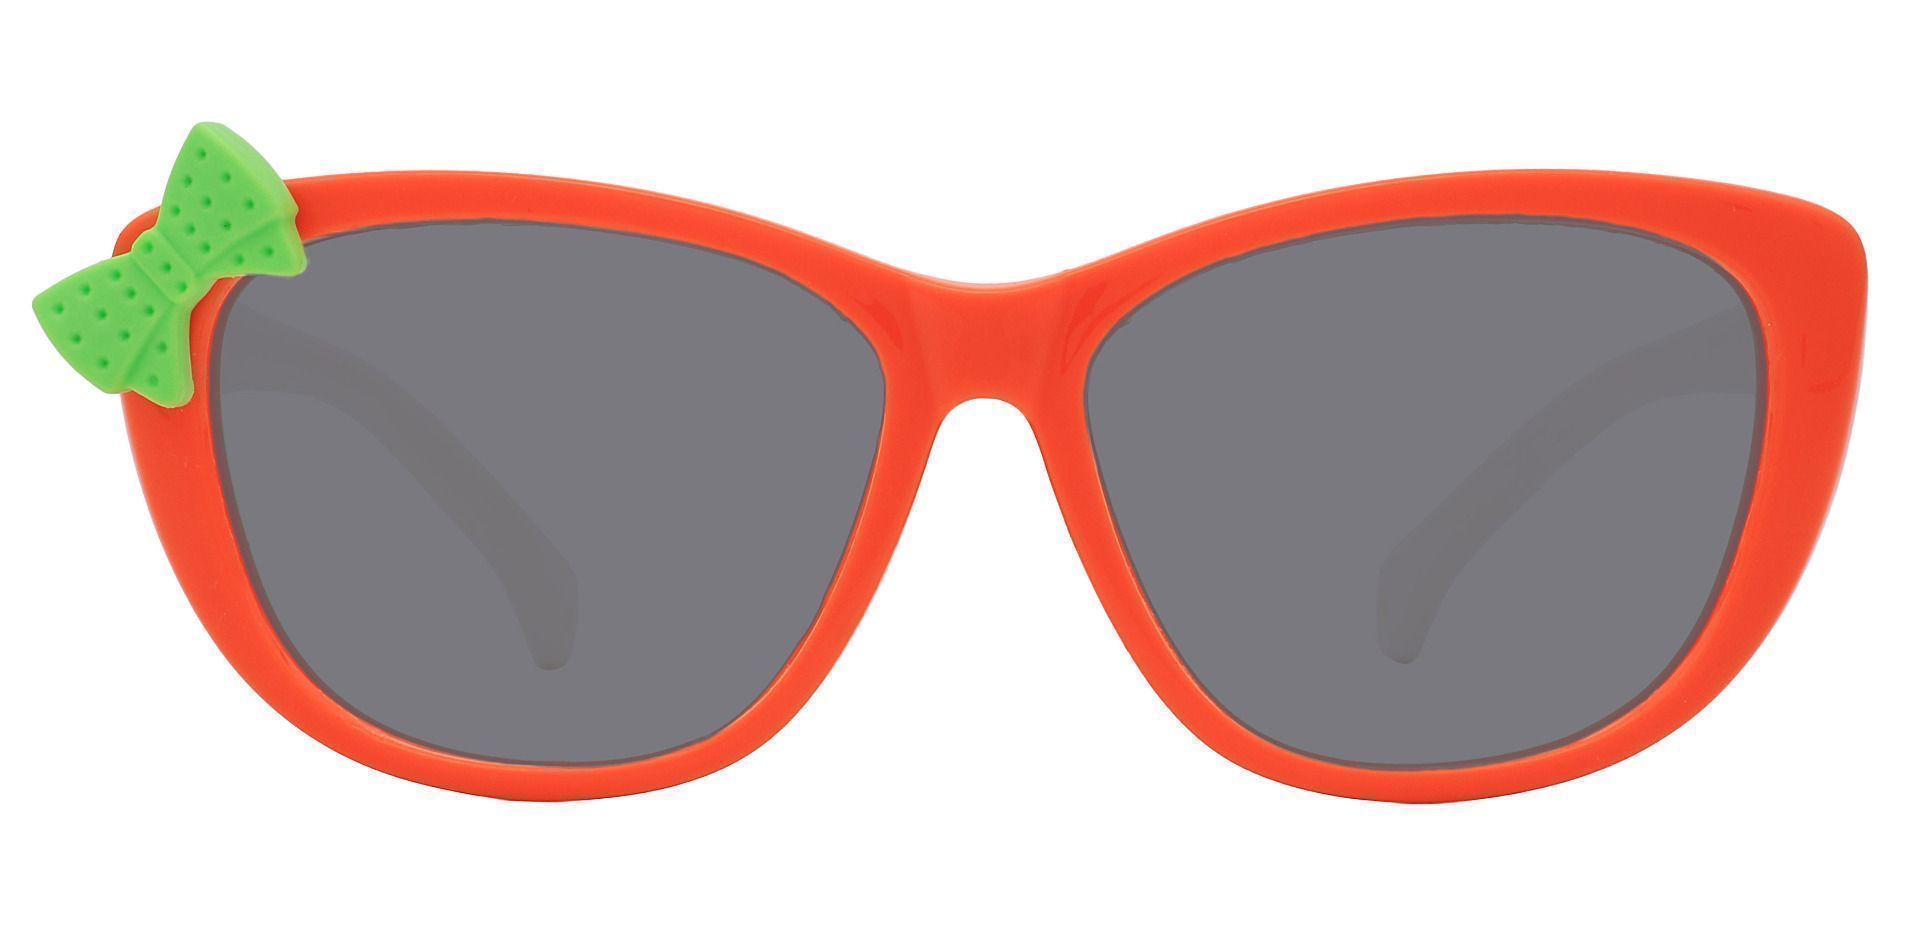 Mandarin Square Reading Sunglasses - Orange Frame With Gray Lenses